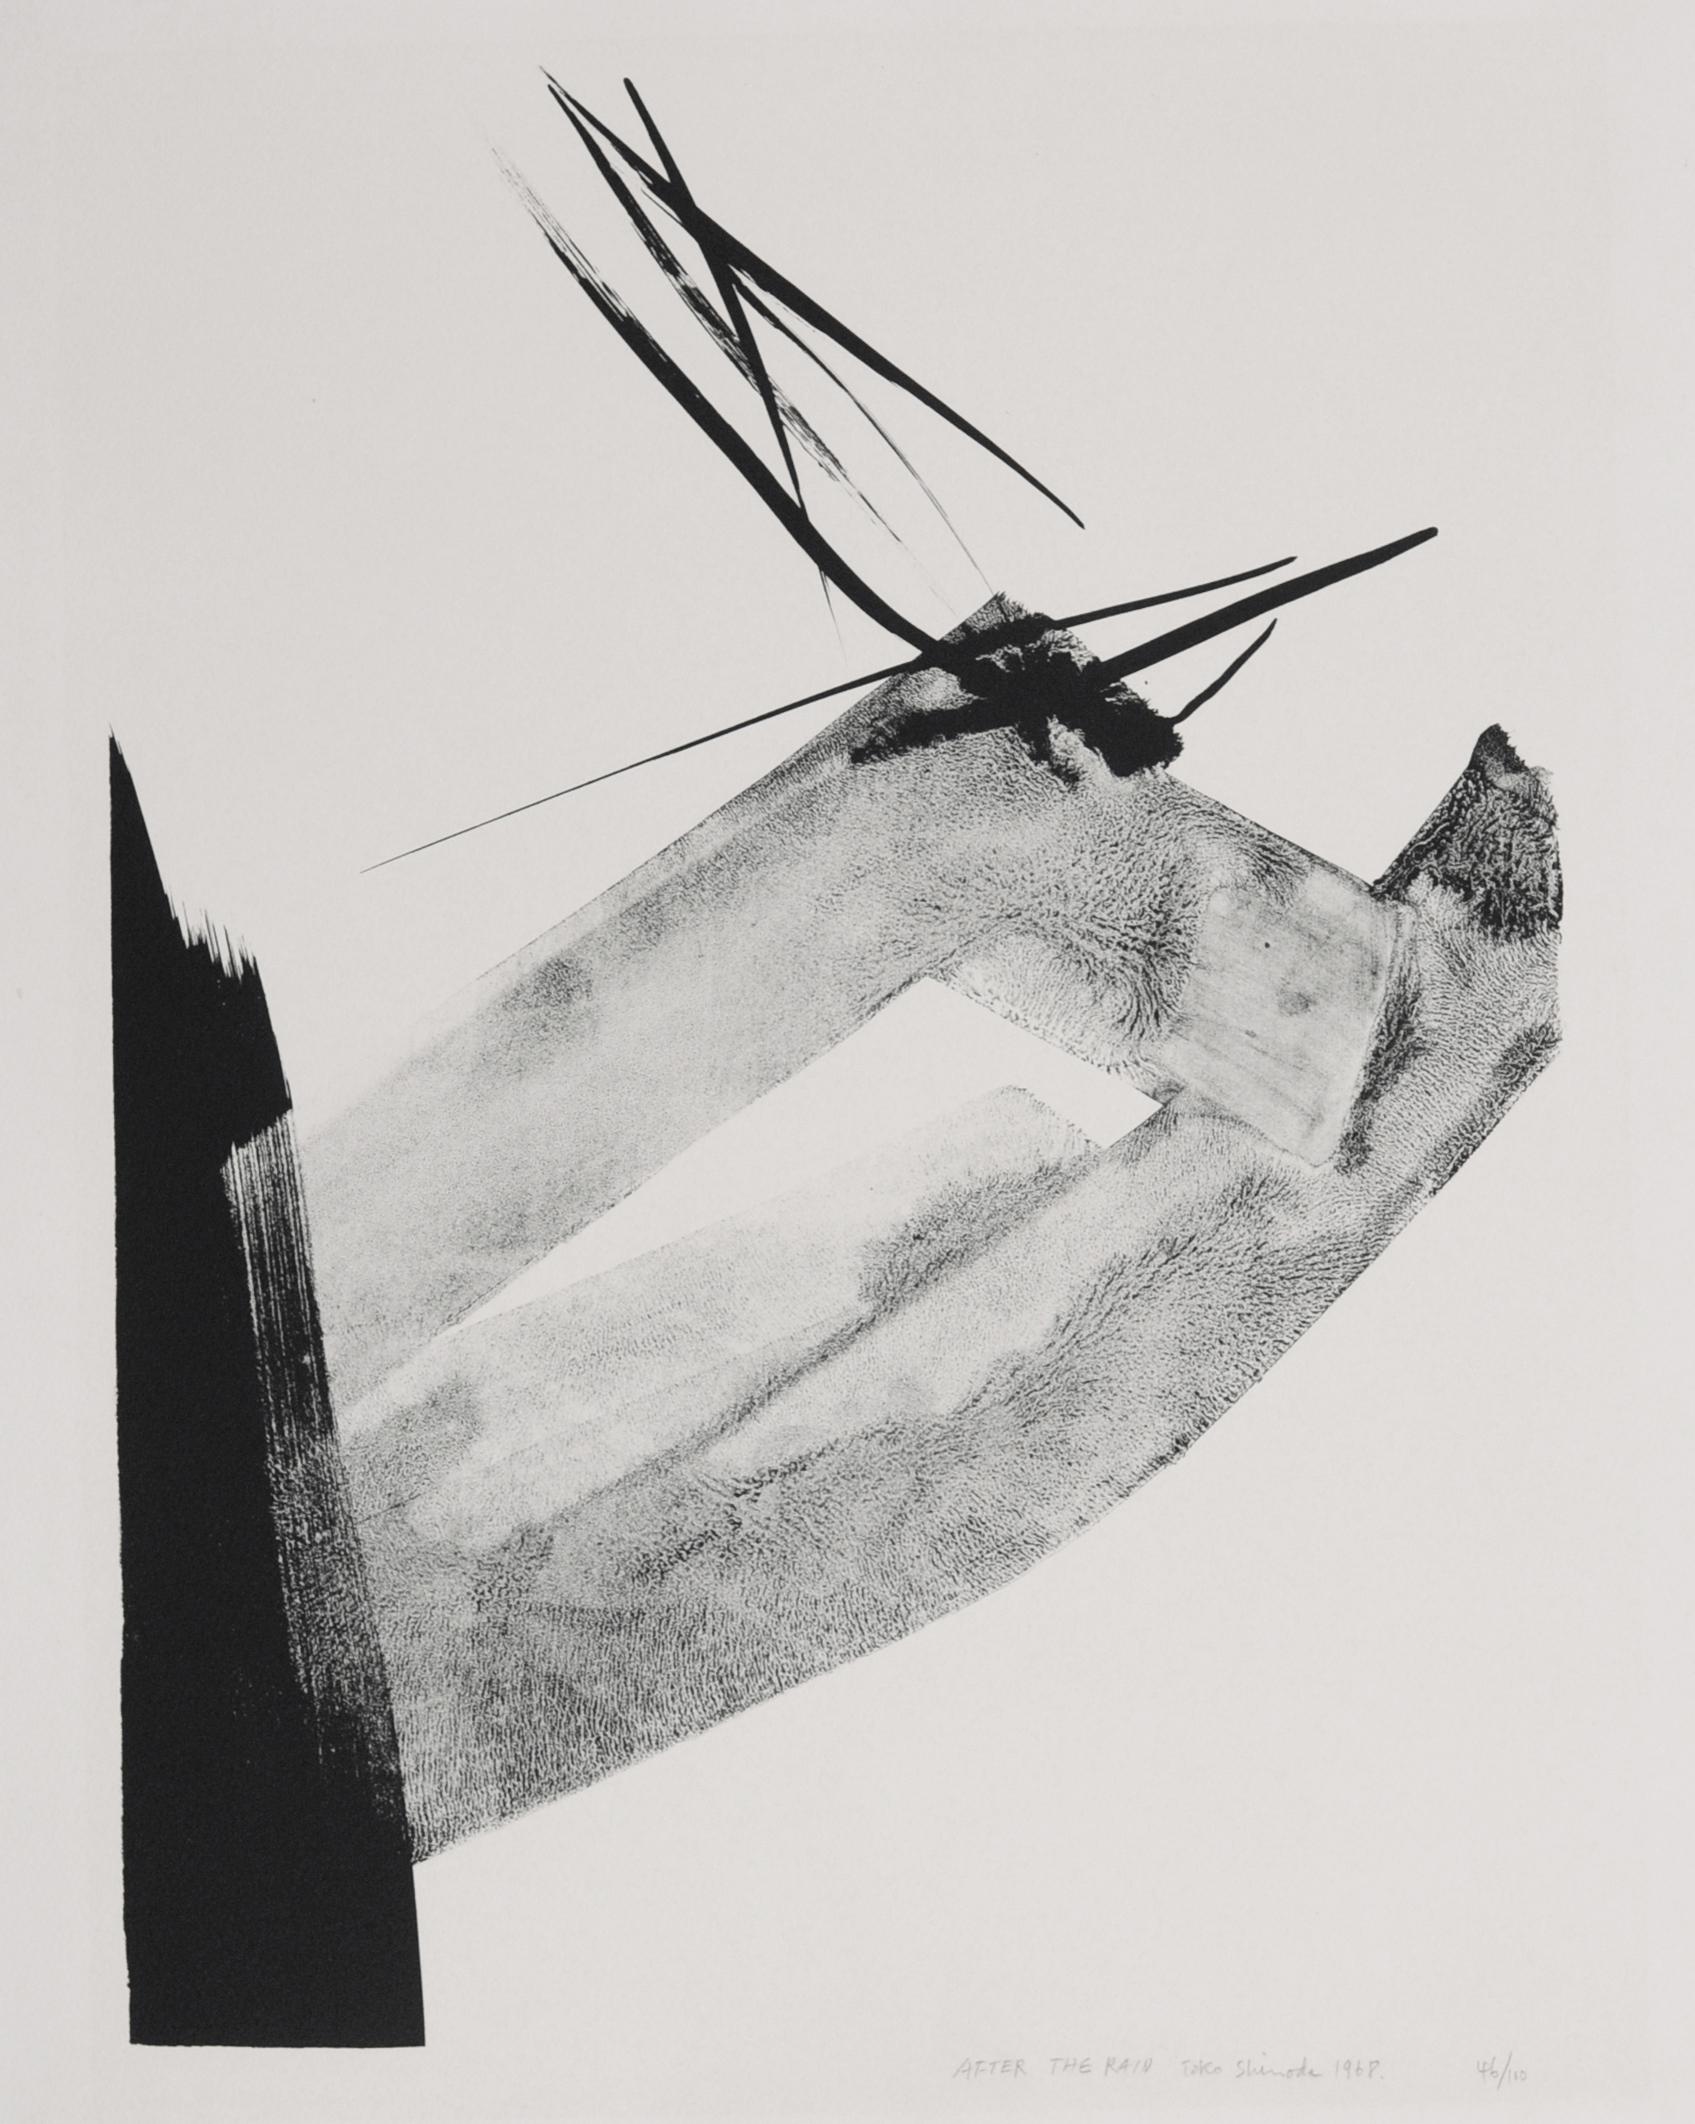 Toko Shinoda Abstract Print - After the Rain